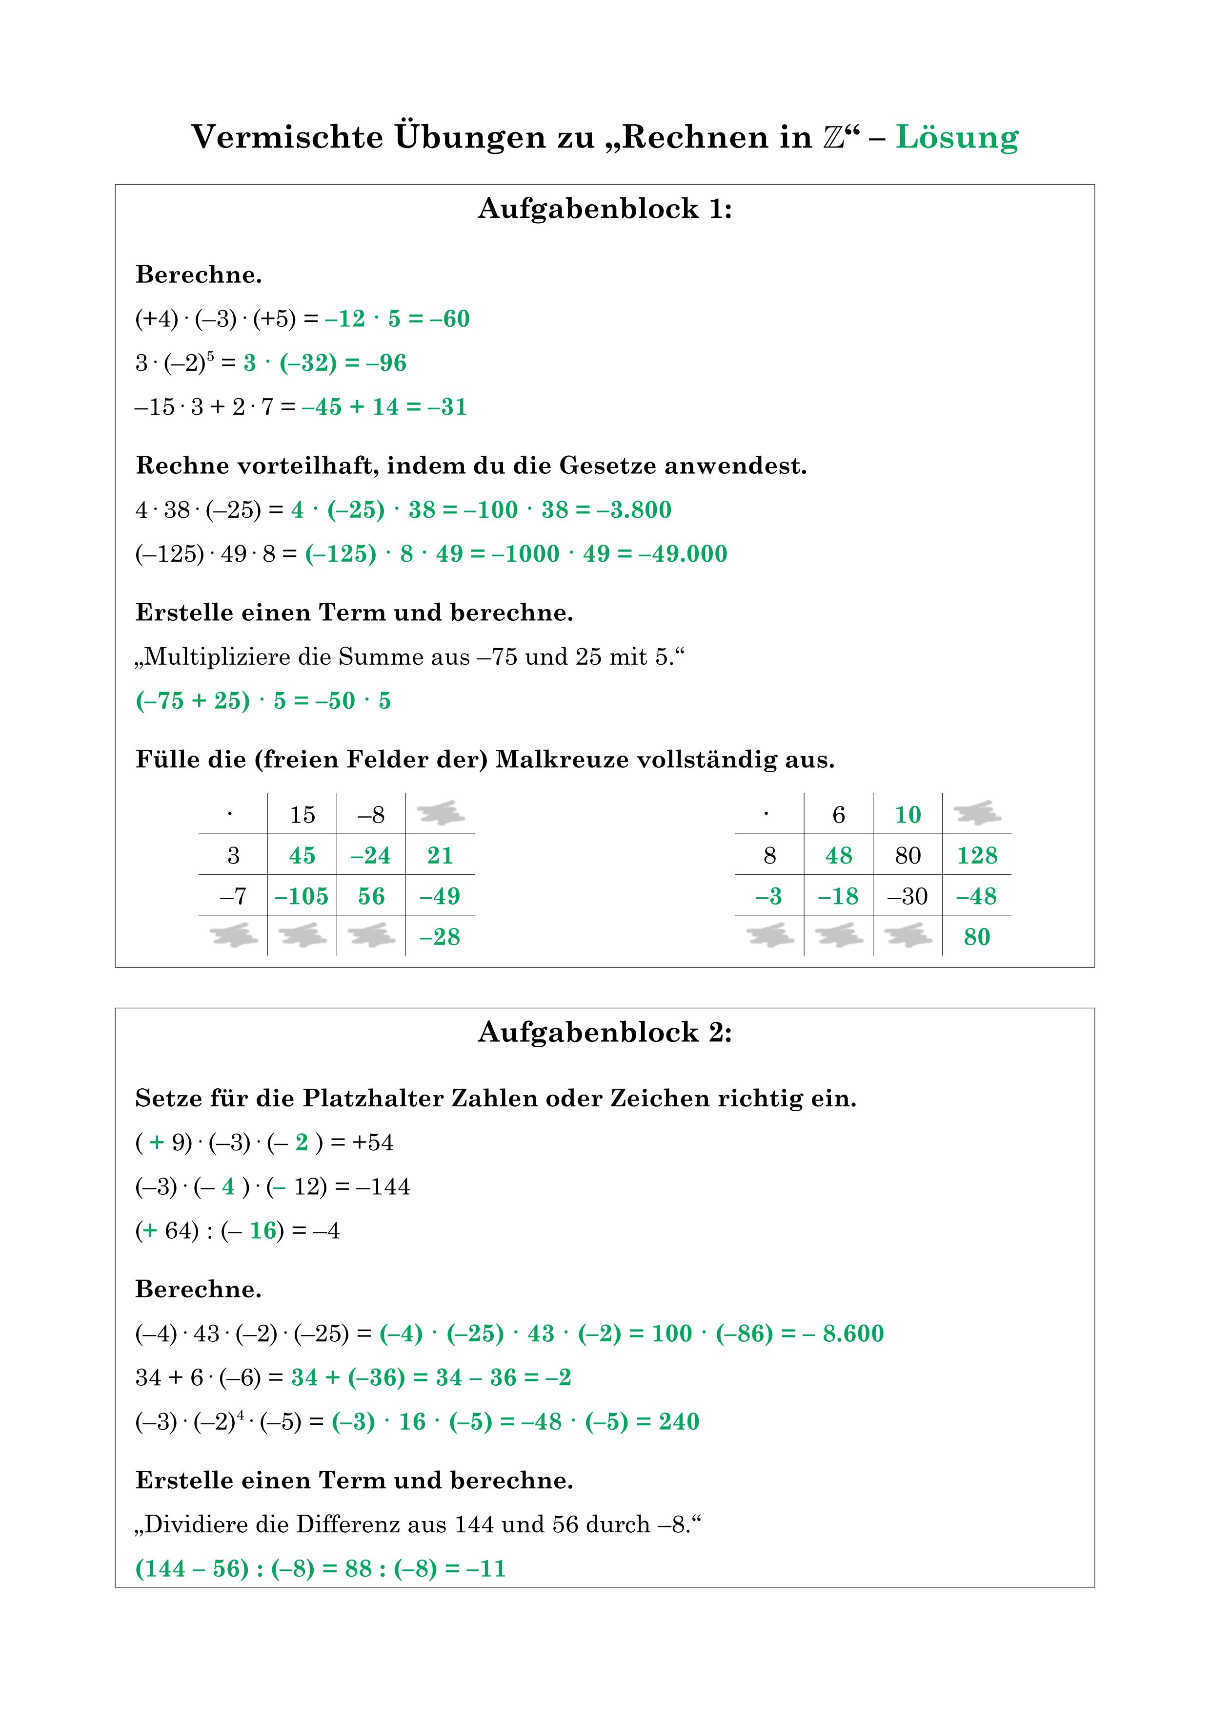 Lösung AB (Seite 1)